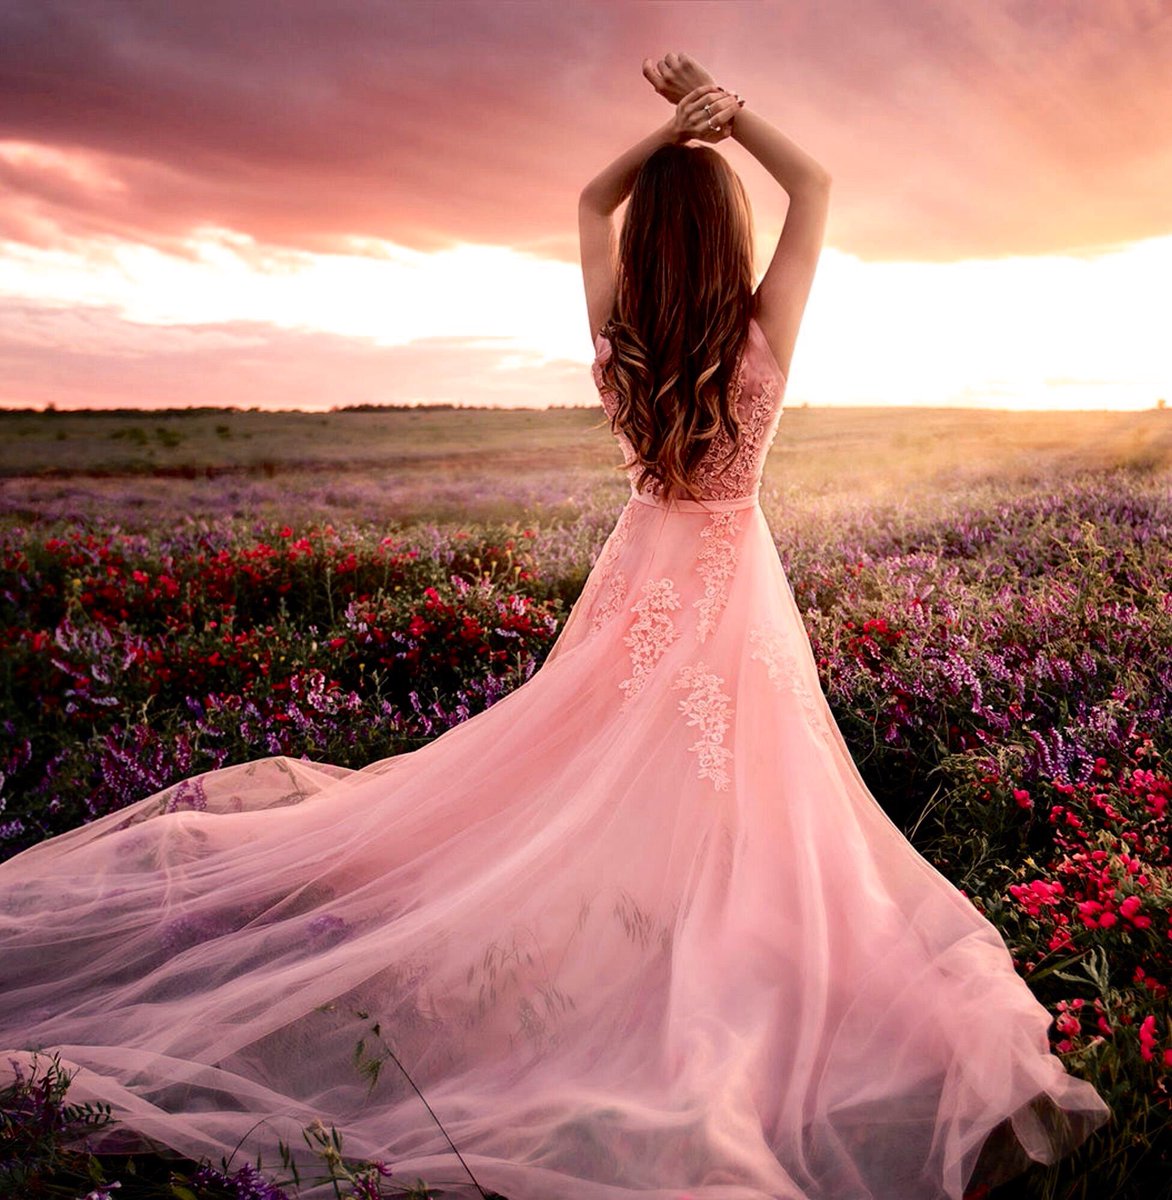 Песня ждет меня на берегу самая красивая. Женственность. Девушка в платье. Девушка женственность. Девушка в длинном розовом платье.